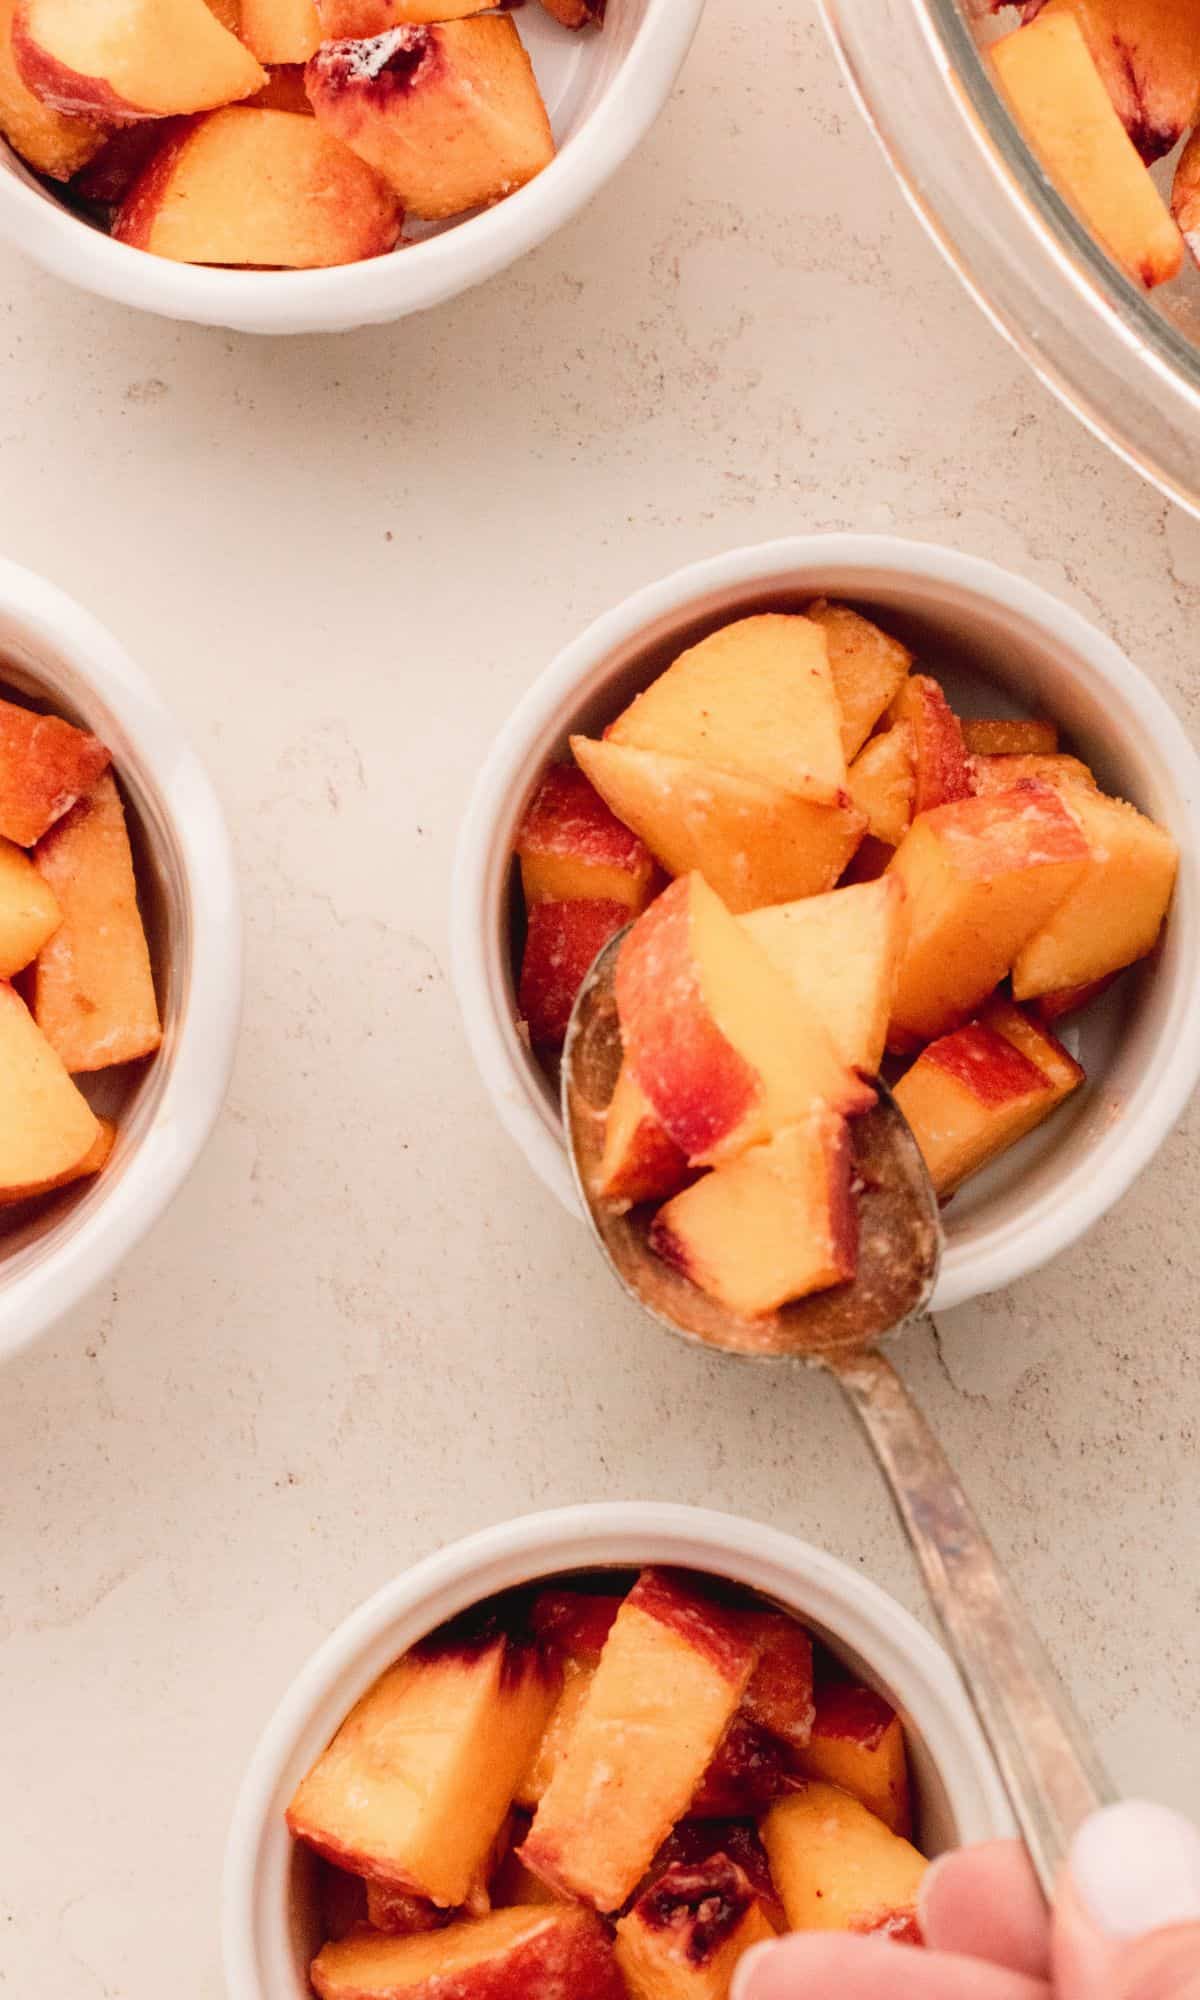 Peach crisp preparation.